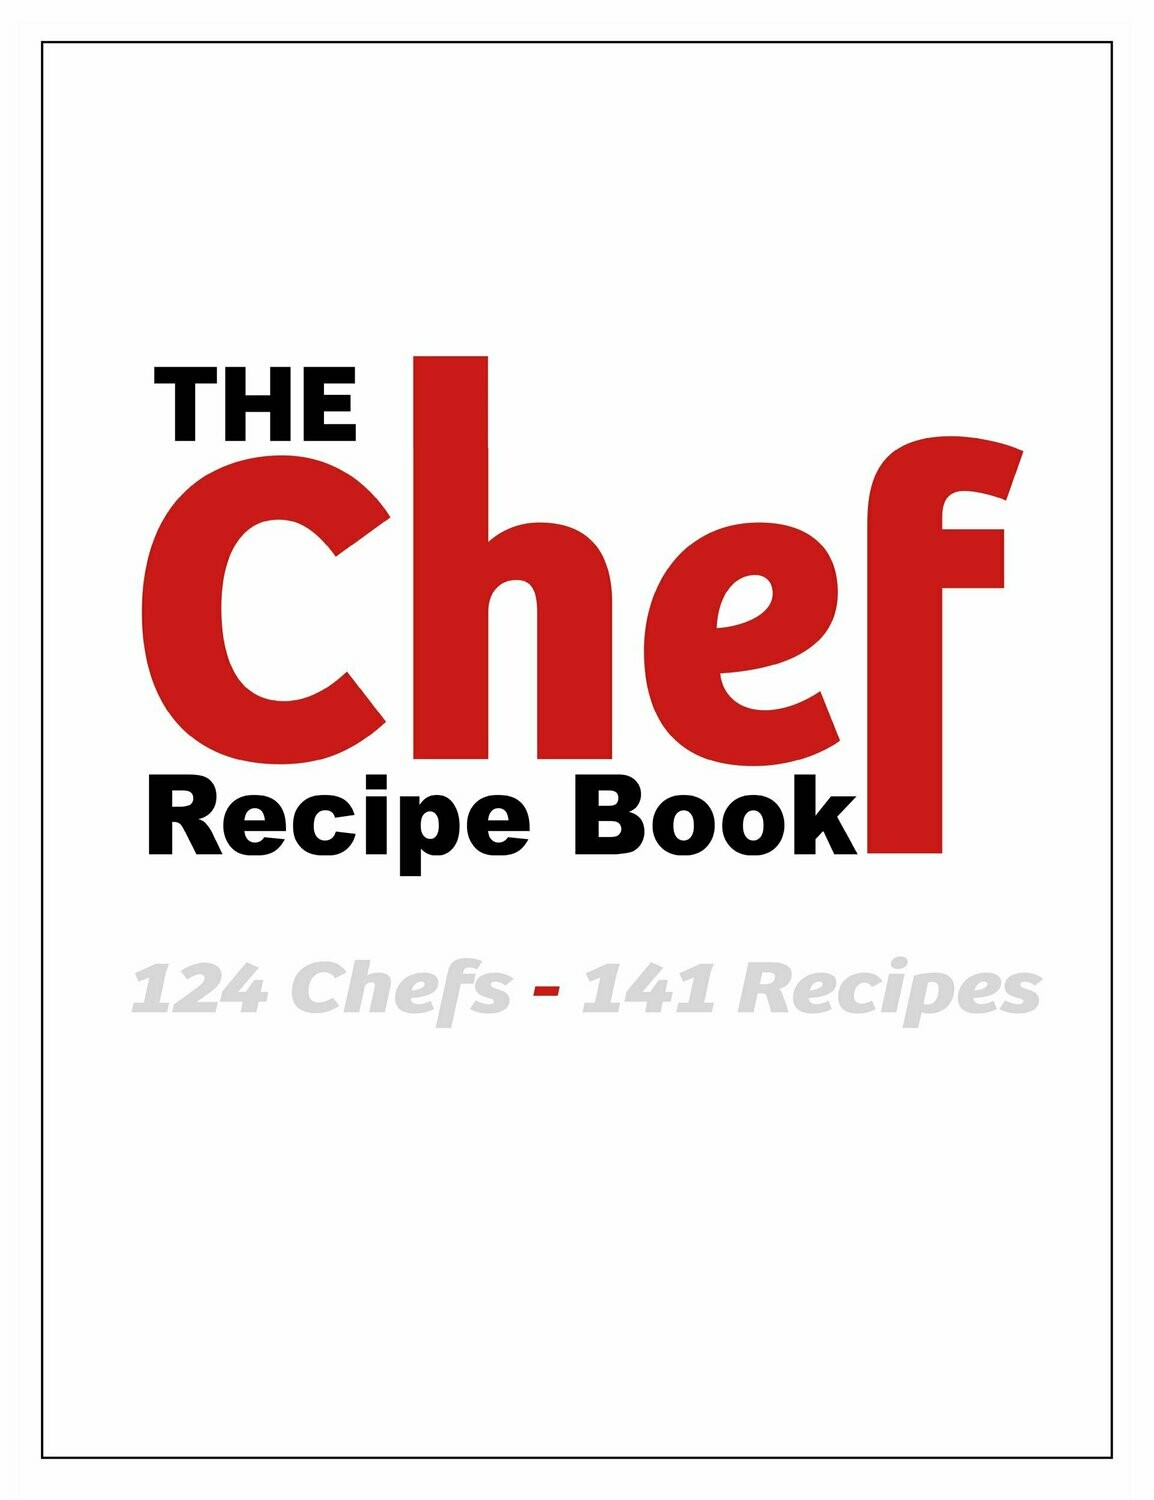 The Chef recipe book plus free annual subscription to Chef magazine